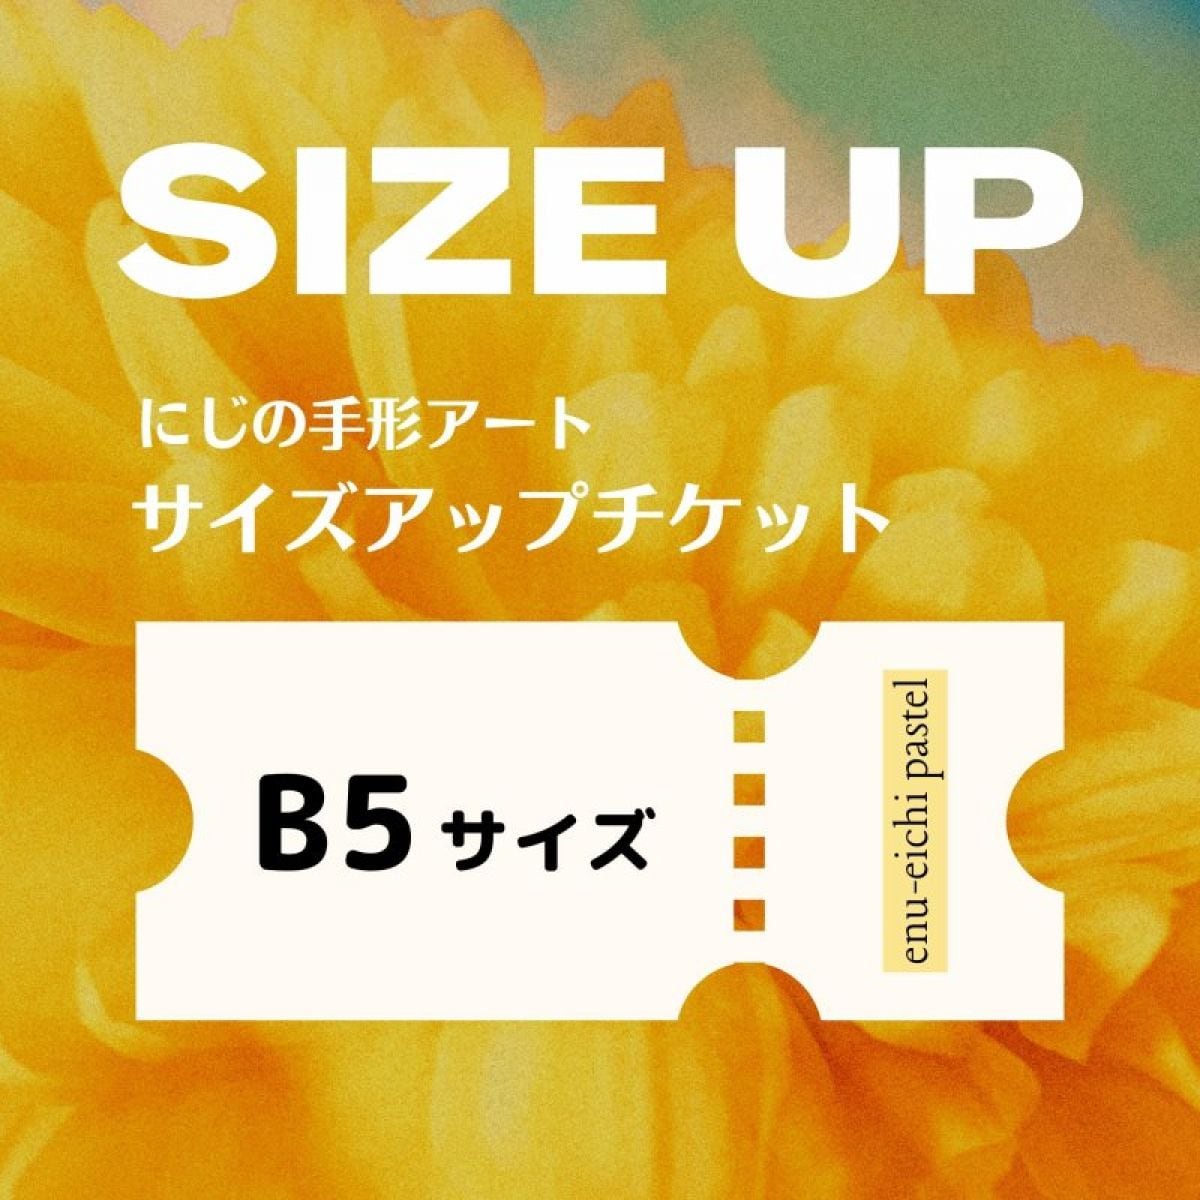 【B5サイズ】にじの手形アート サイズアップチケット